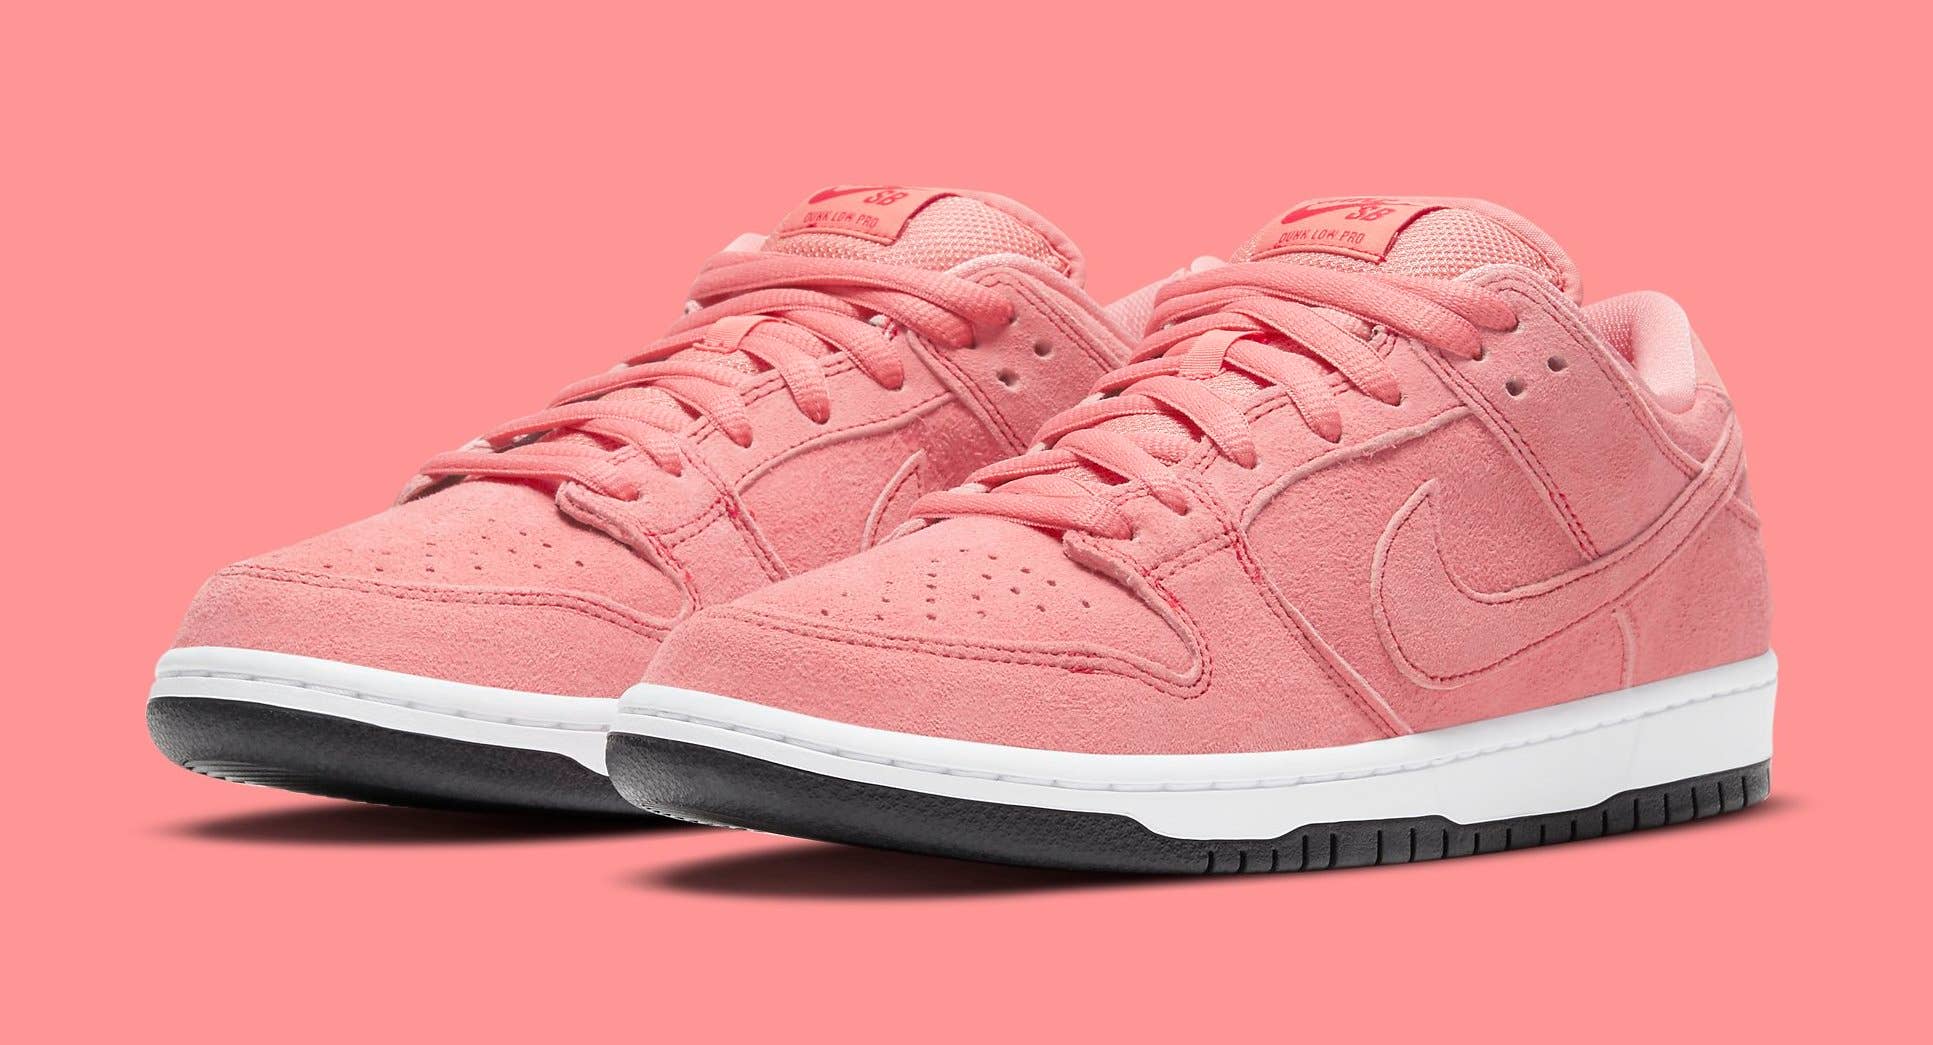 Nike SB Dunk Low 'Pink Pig' CV1655 600 Pair